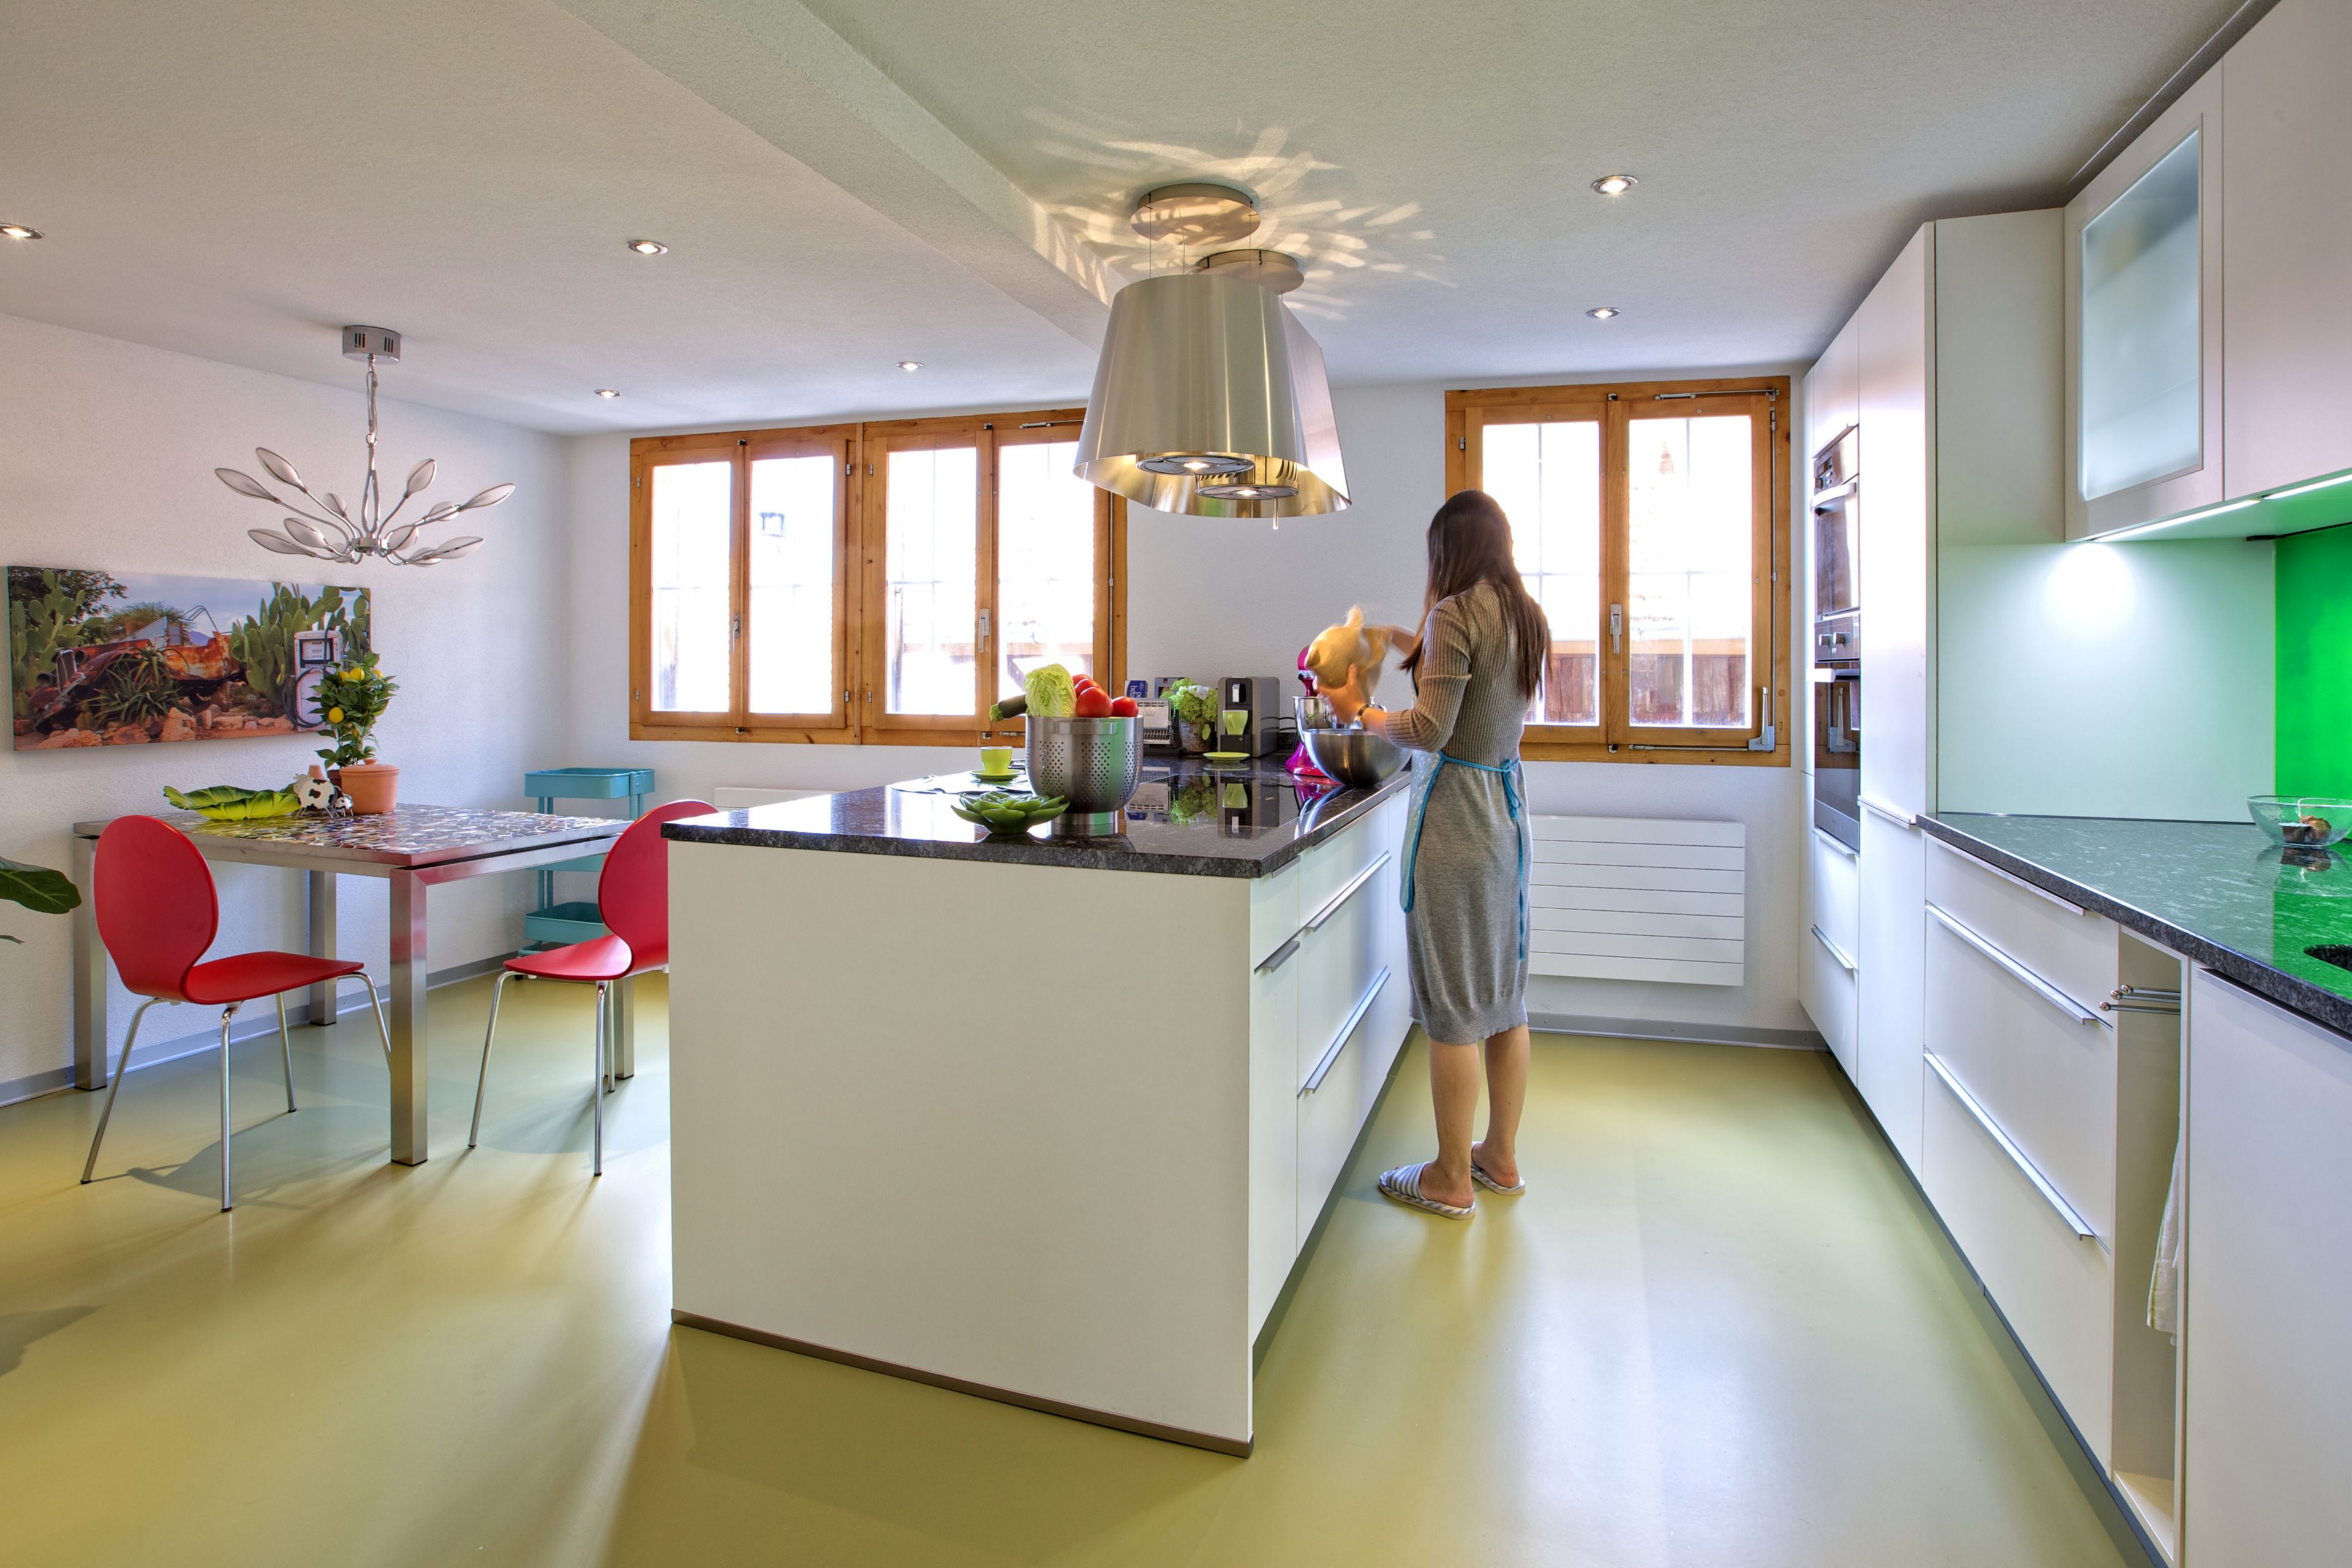 Sika ComfortFloor® green floor in kitchen with woman preparing food